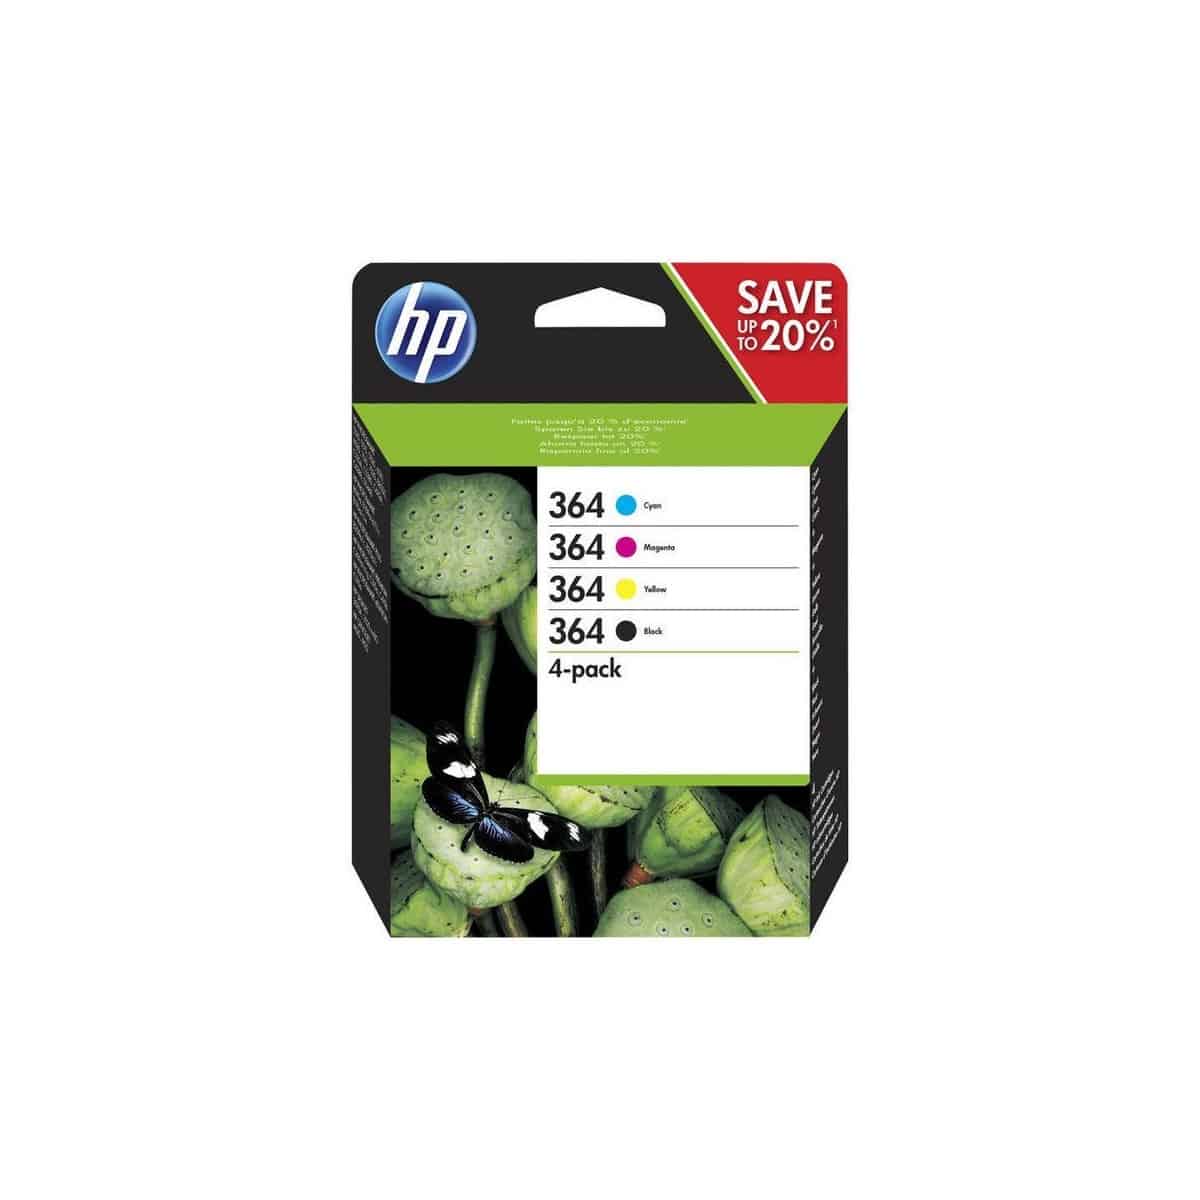 ✓ Pack UPrint compatible HP 302XL noir et couleur couleur pack en